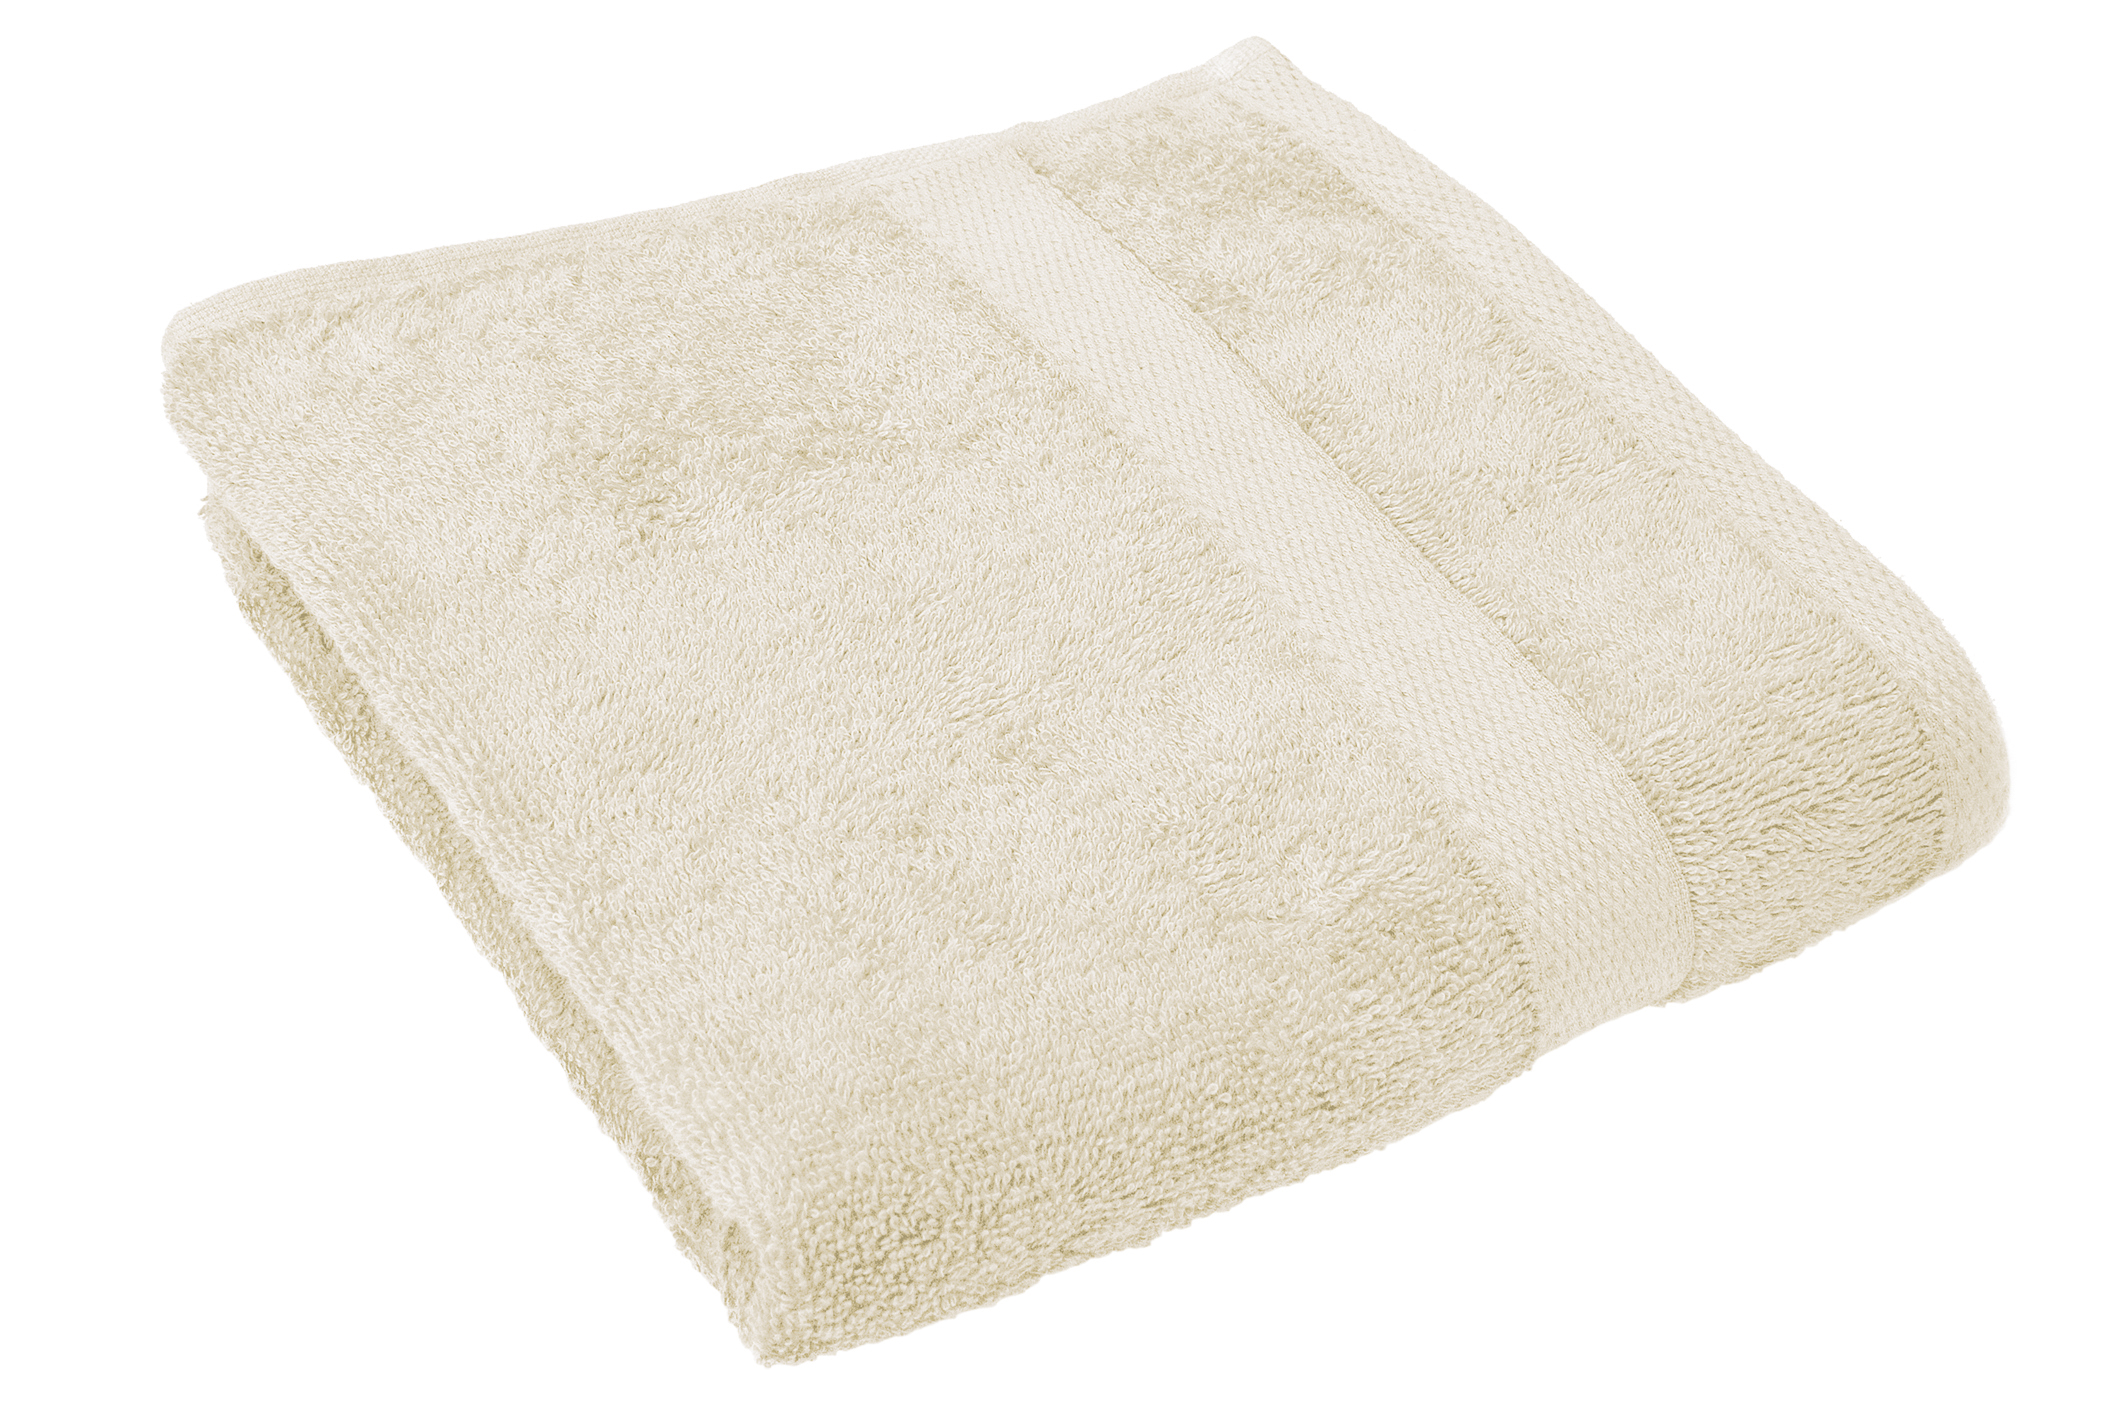 Bath towel 50x100cm, natural